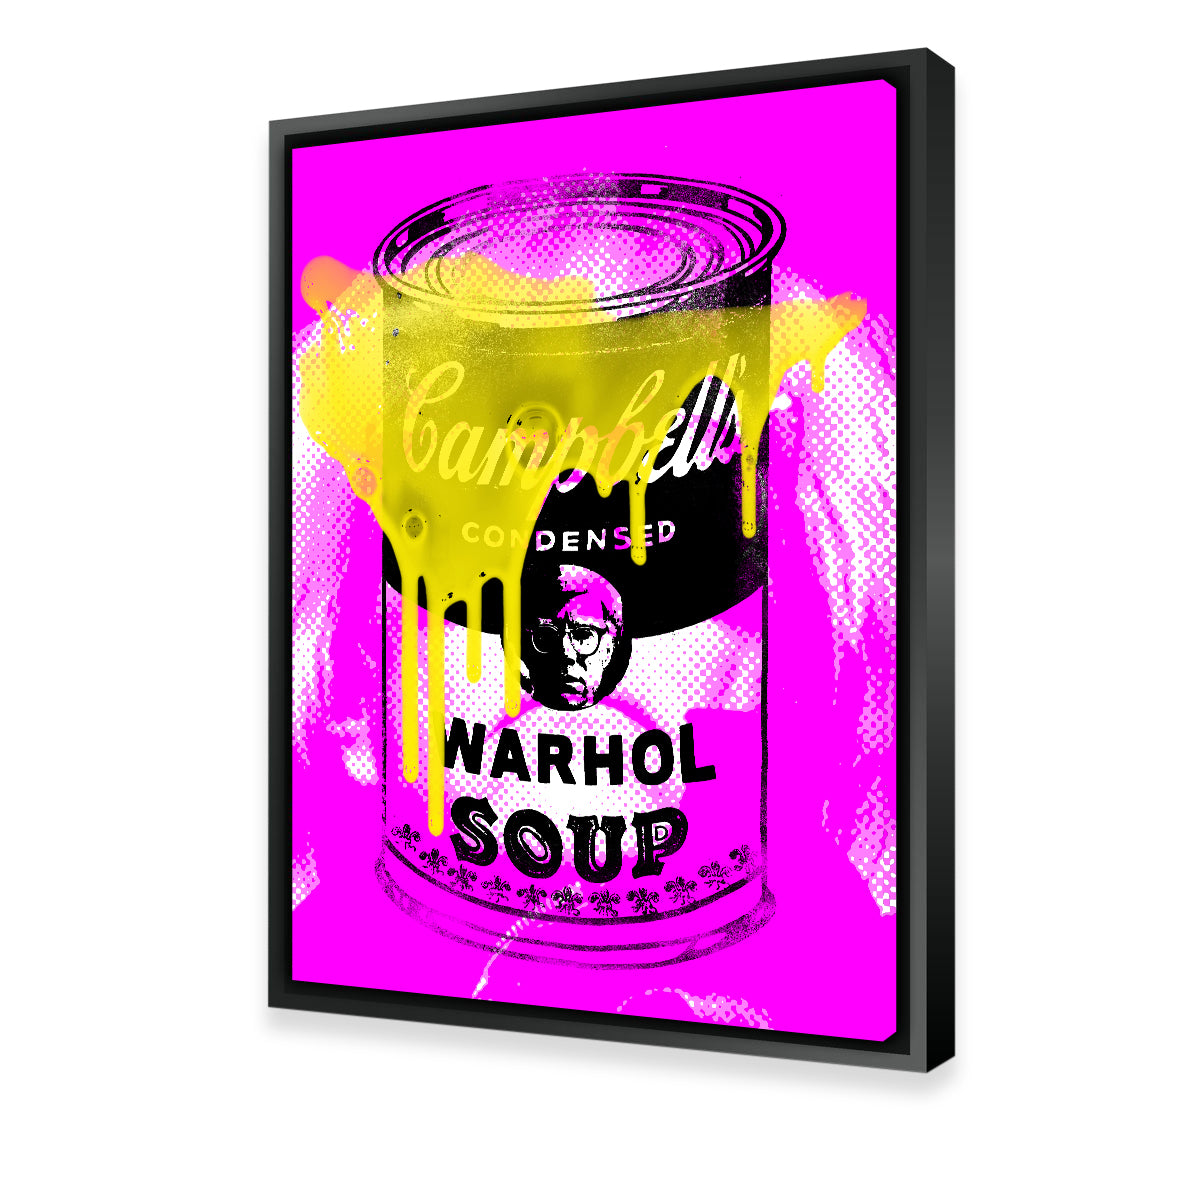 Warhol Soup 1